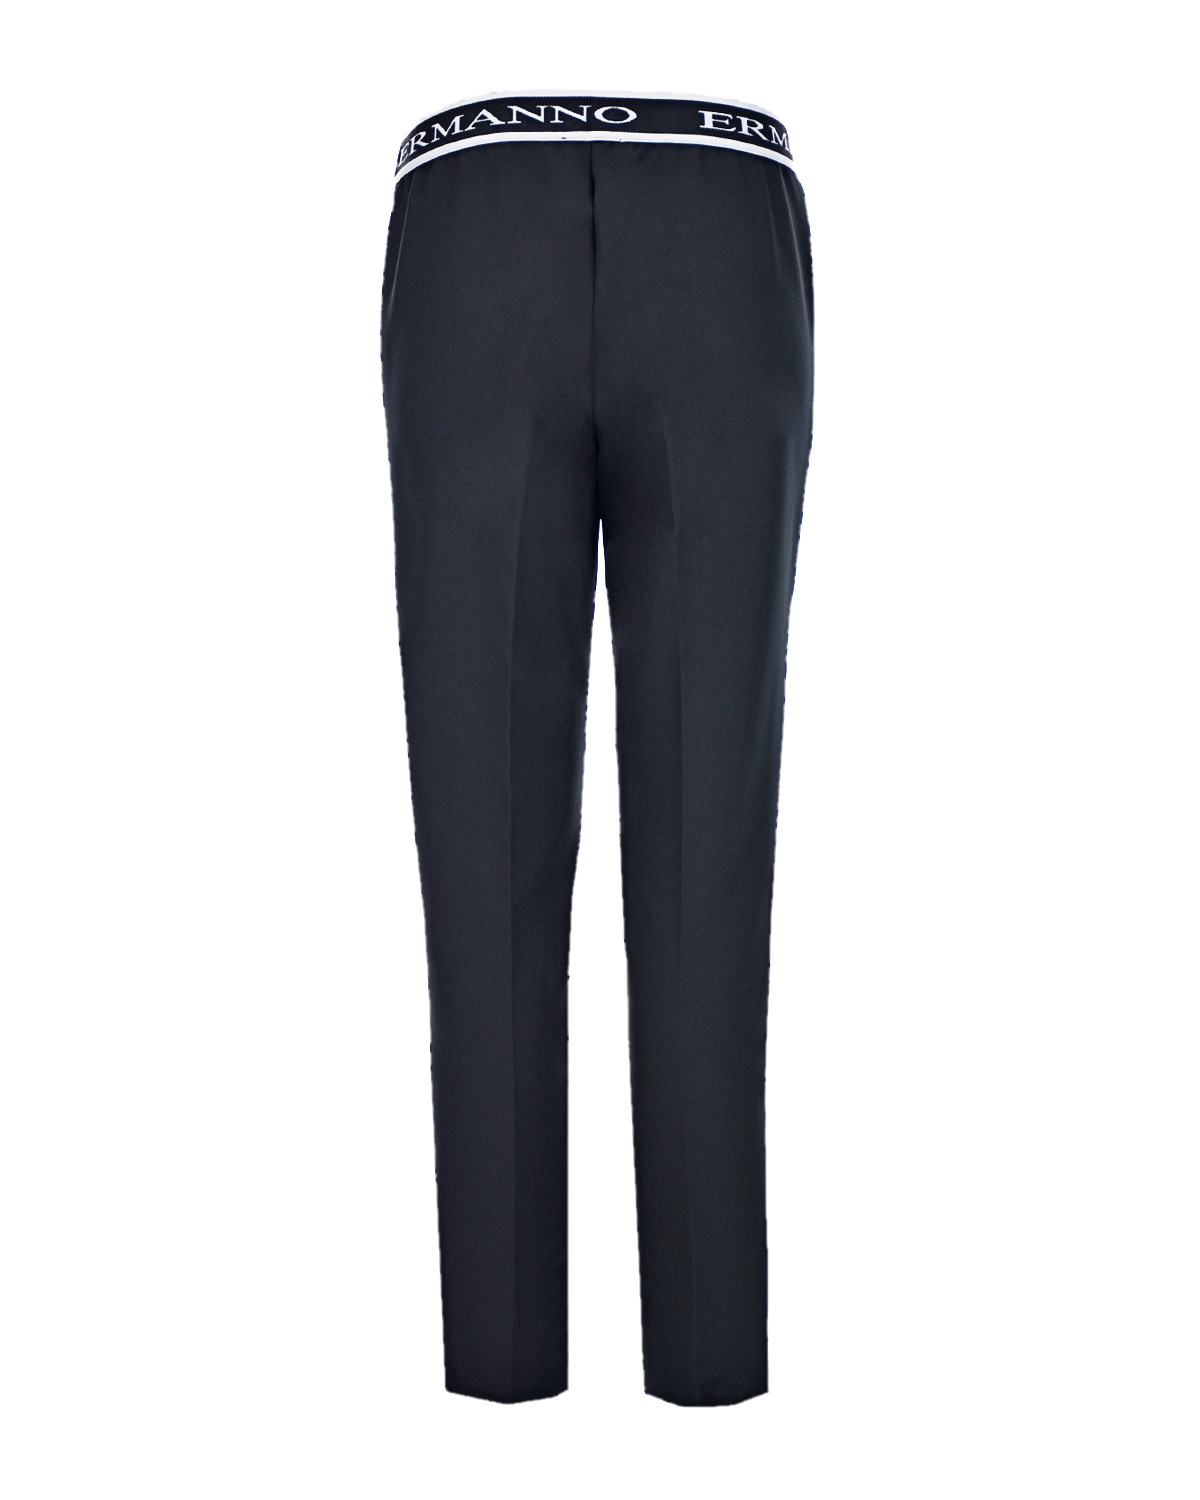 Классические брюки с поясом на резинке Ermanno Ermanno Scervino, размер 40, цвет черный - фото 5